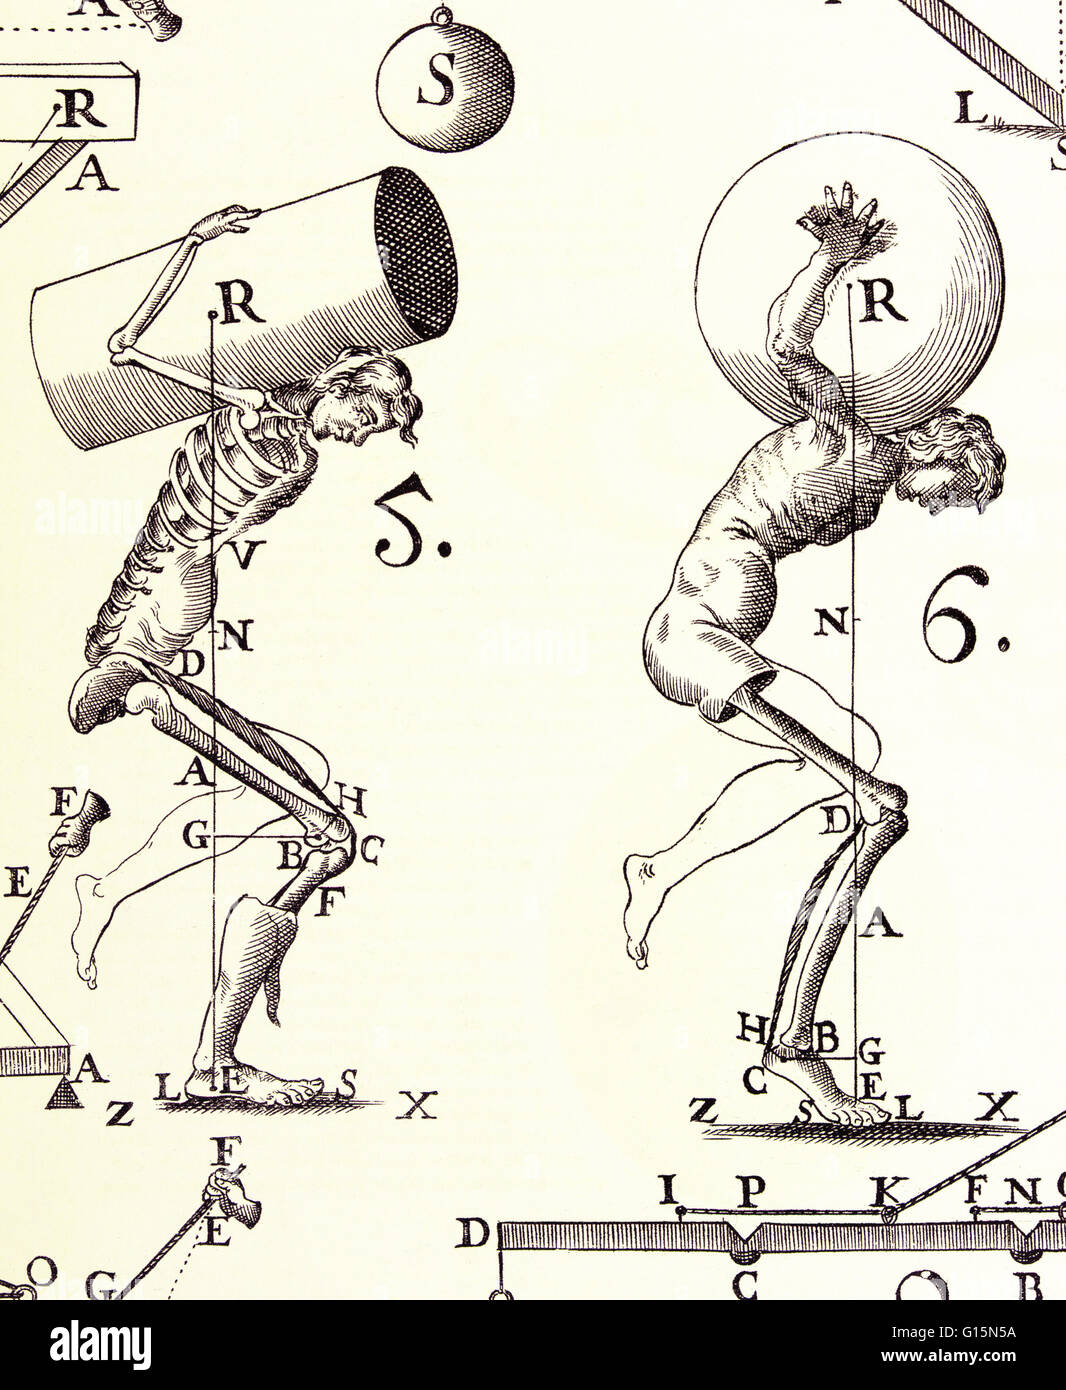 Illustrazione da De motu animalium (sul movimento degli animali, 1680) da Alfonso Borelli (1608-1679). Borelli studiato e illustrato la biomeccanica del corpo vivente come un sistema di leve, pistoni e perni. Questa immagine mostra come il corpo umano e i centri di SUS Foto Stock